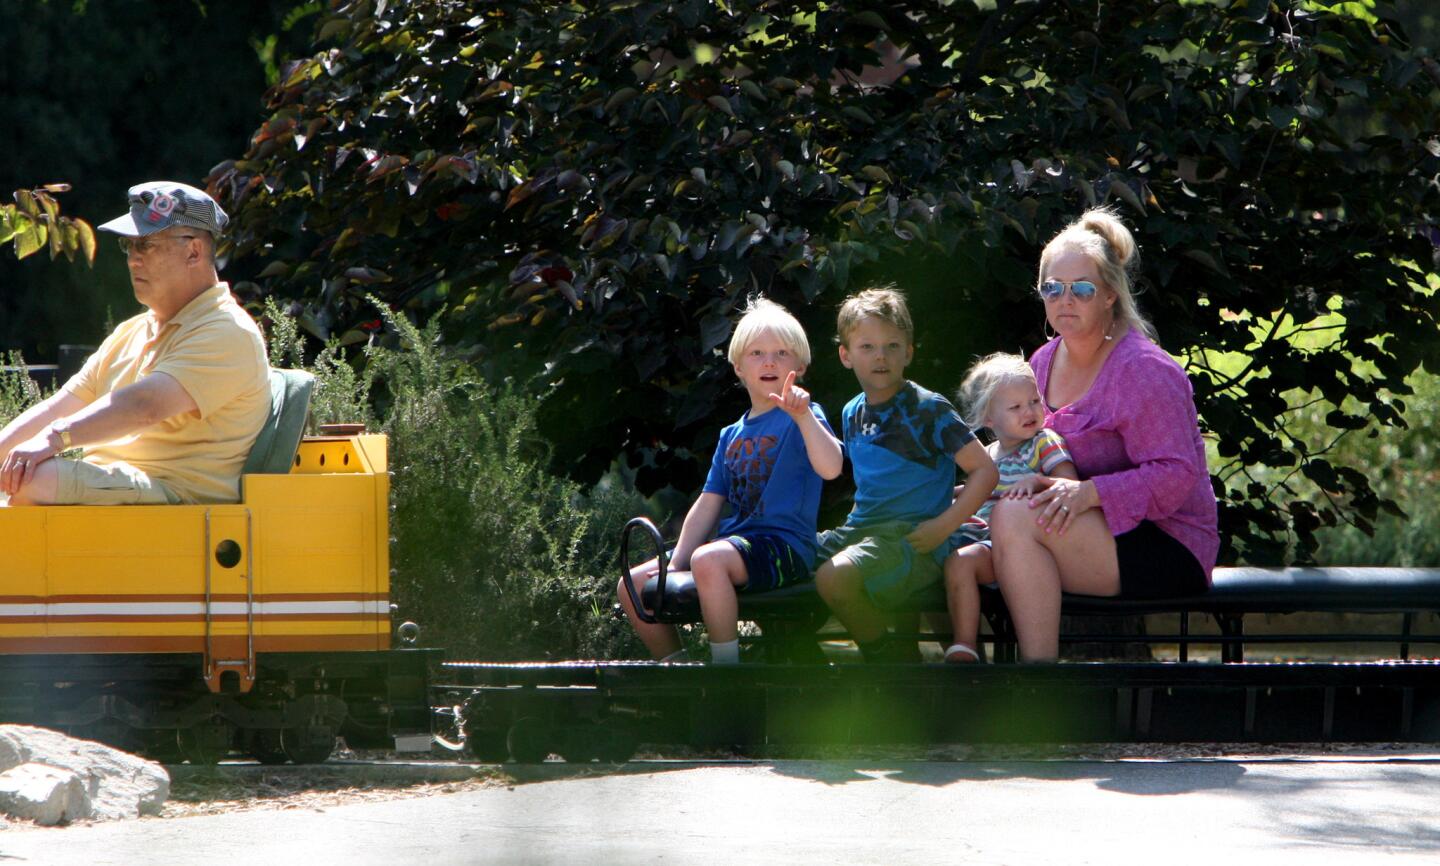 Photo Gallery: Summertime fun at Descanso Gardens